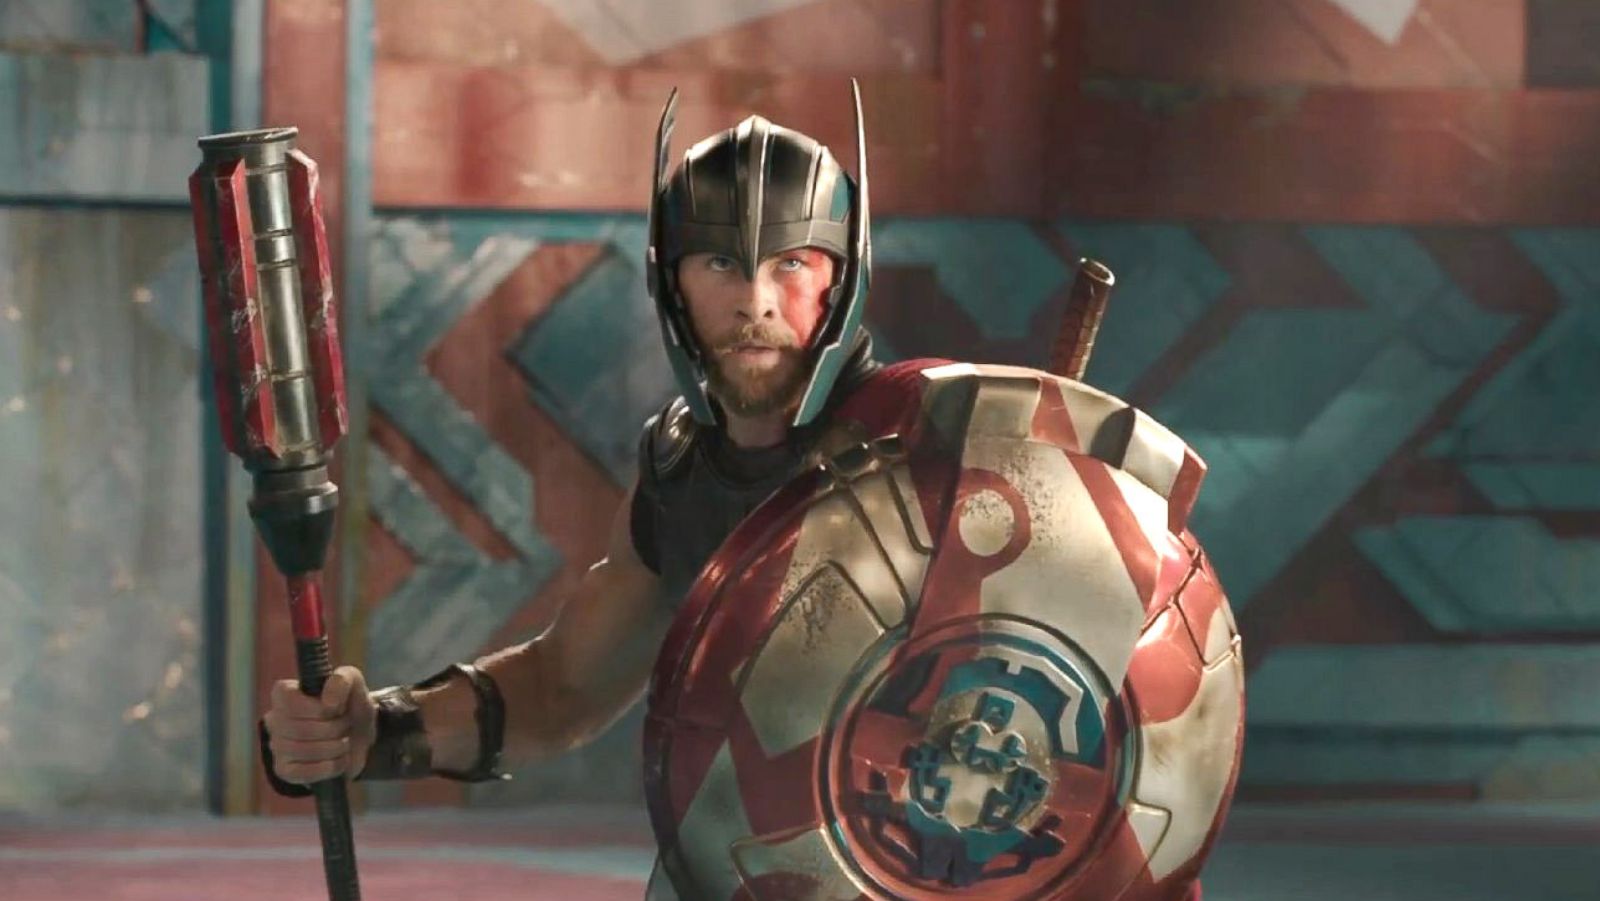 Watch Thor Versus Hulk in the New Thor: Ragnarok Teaser! - D23